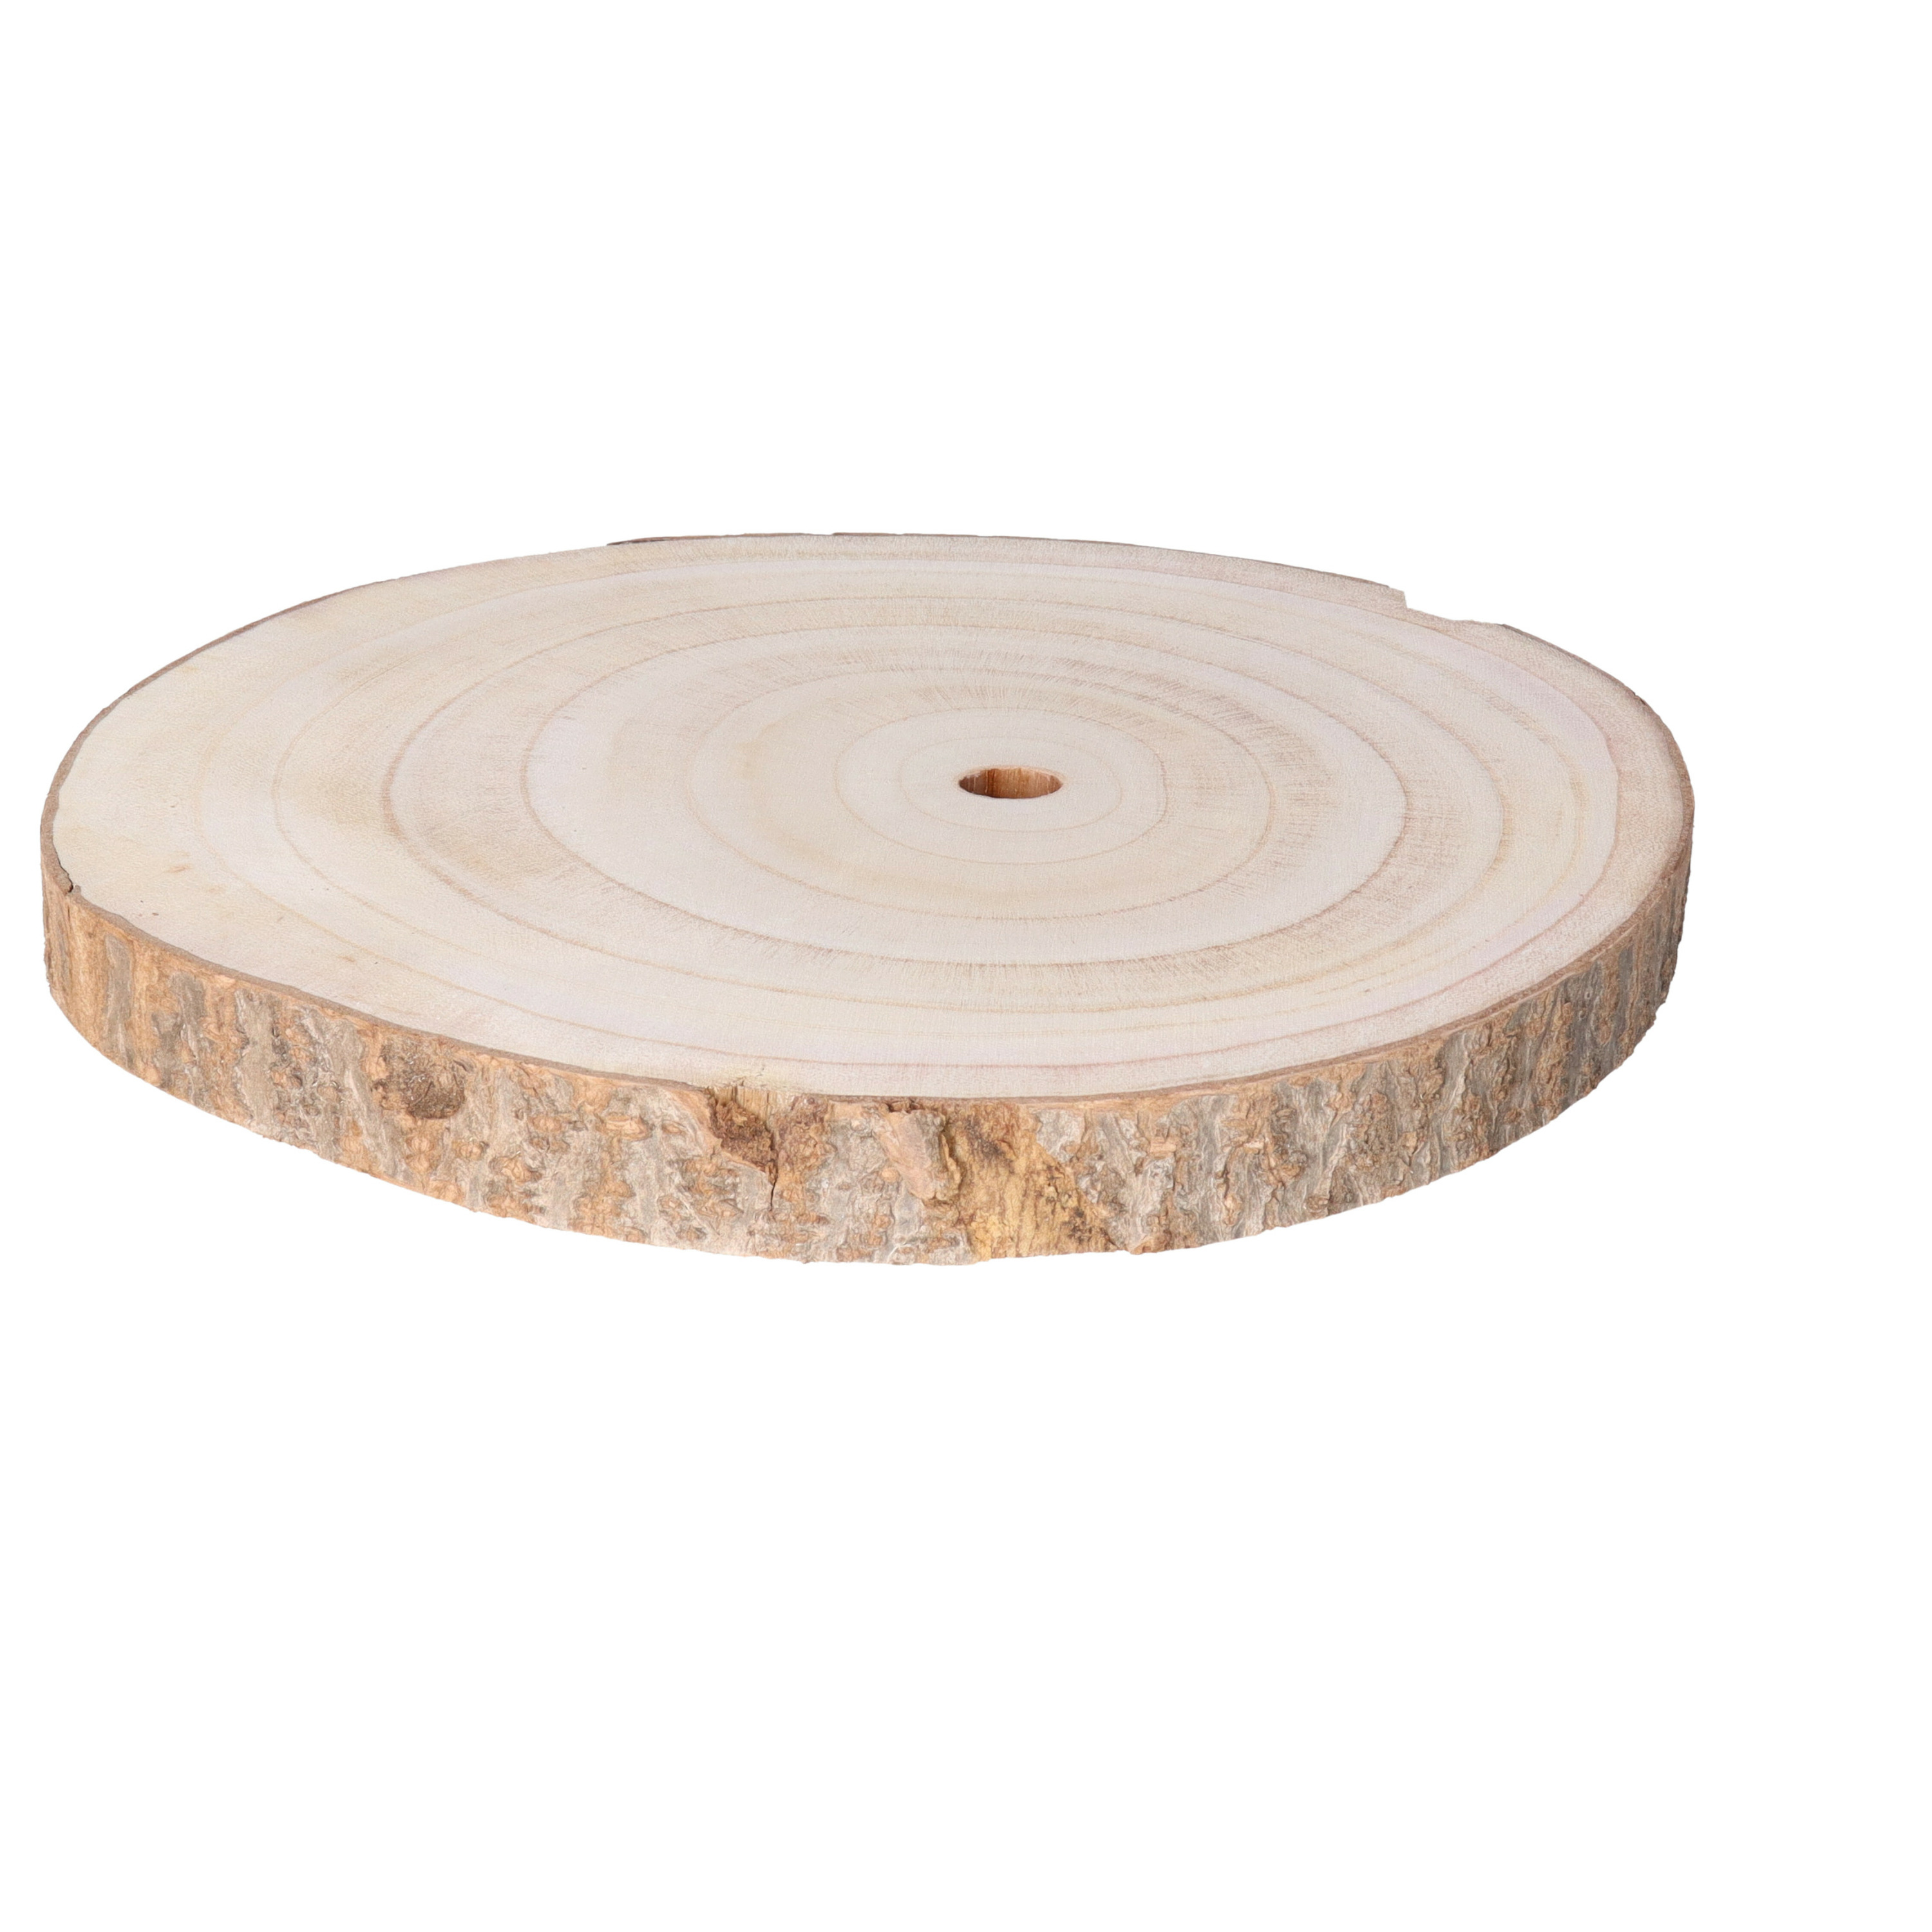 HBX Natural Living Kaarsenbord/decoratie dienblad - houten boomschijf - D29 x H3 cm - rond - tafeldecoratie schaal -